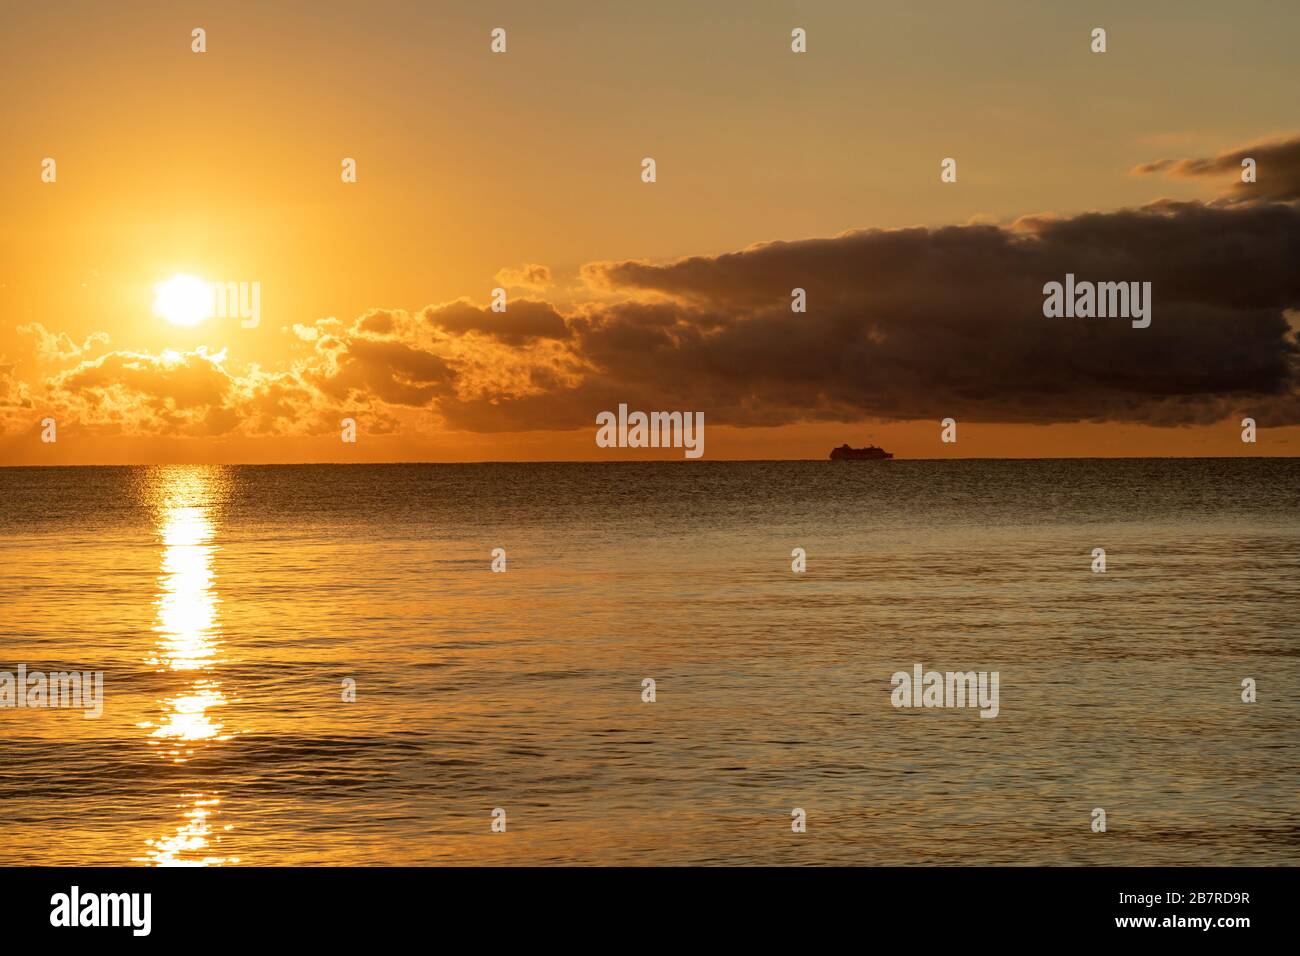 Lever de soleil doré sur la mer des Caraïbes, vu de la côte de Cancun, au Mexique, avec une silhouette d'un navire de passage au loin. Banque D'Images